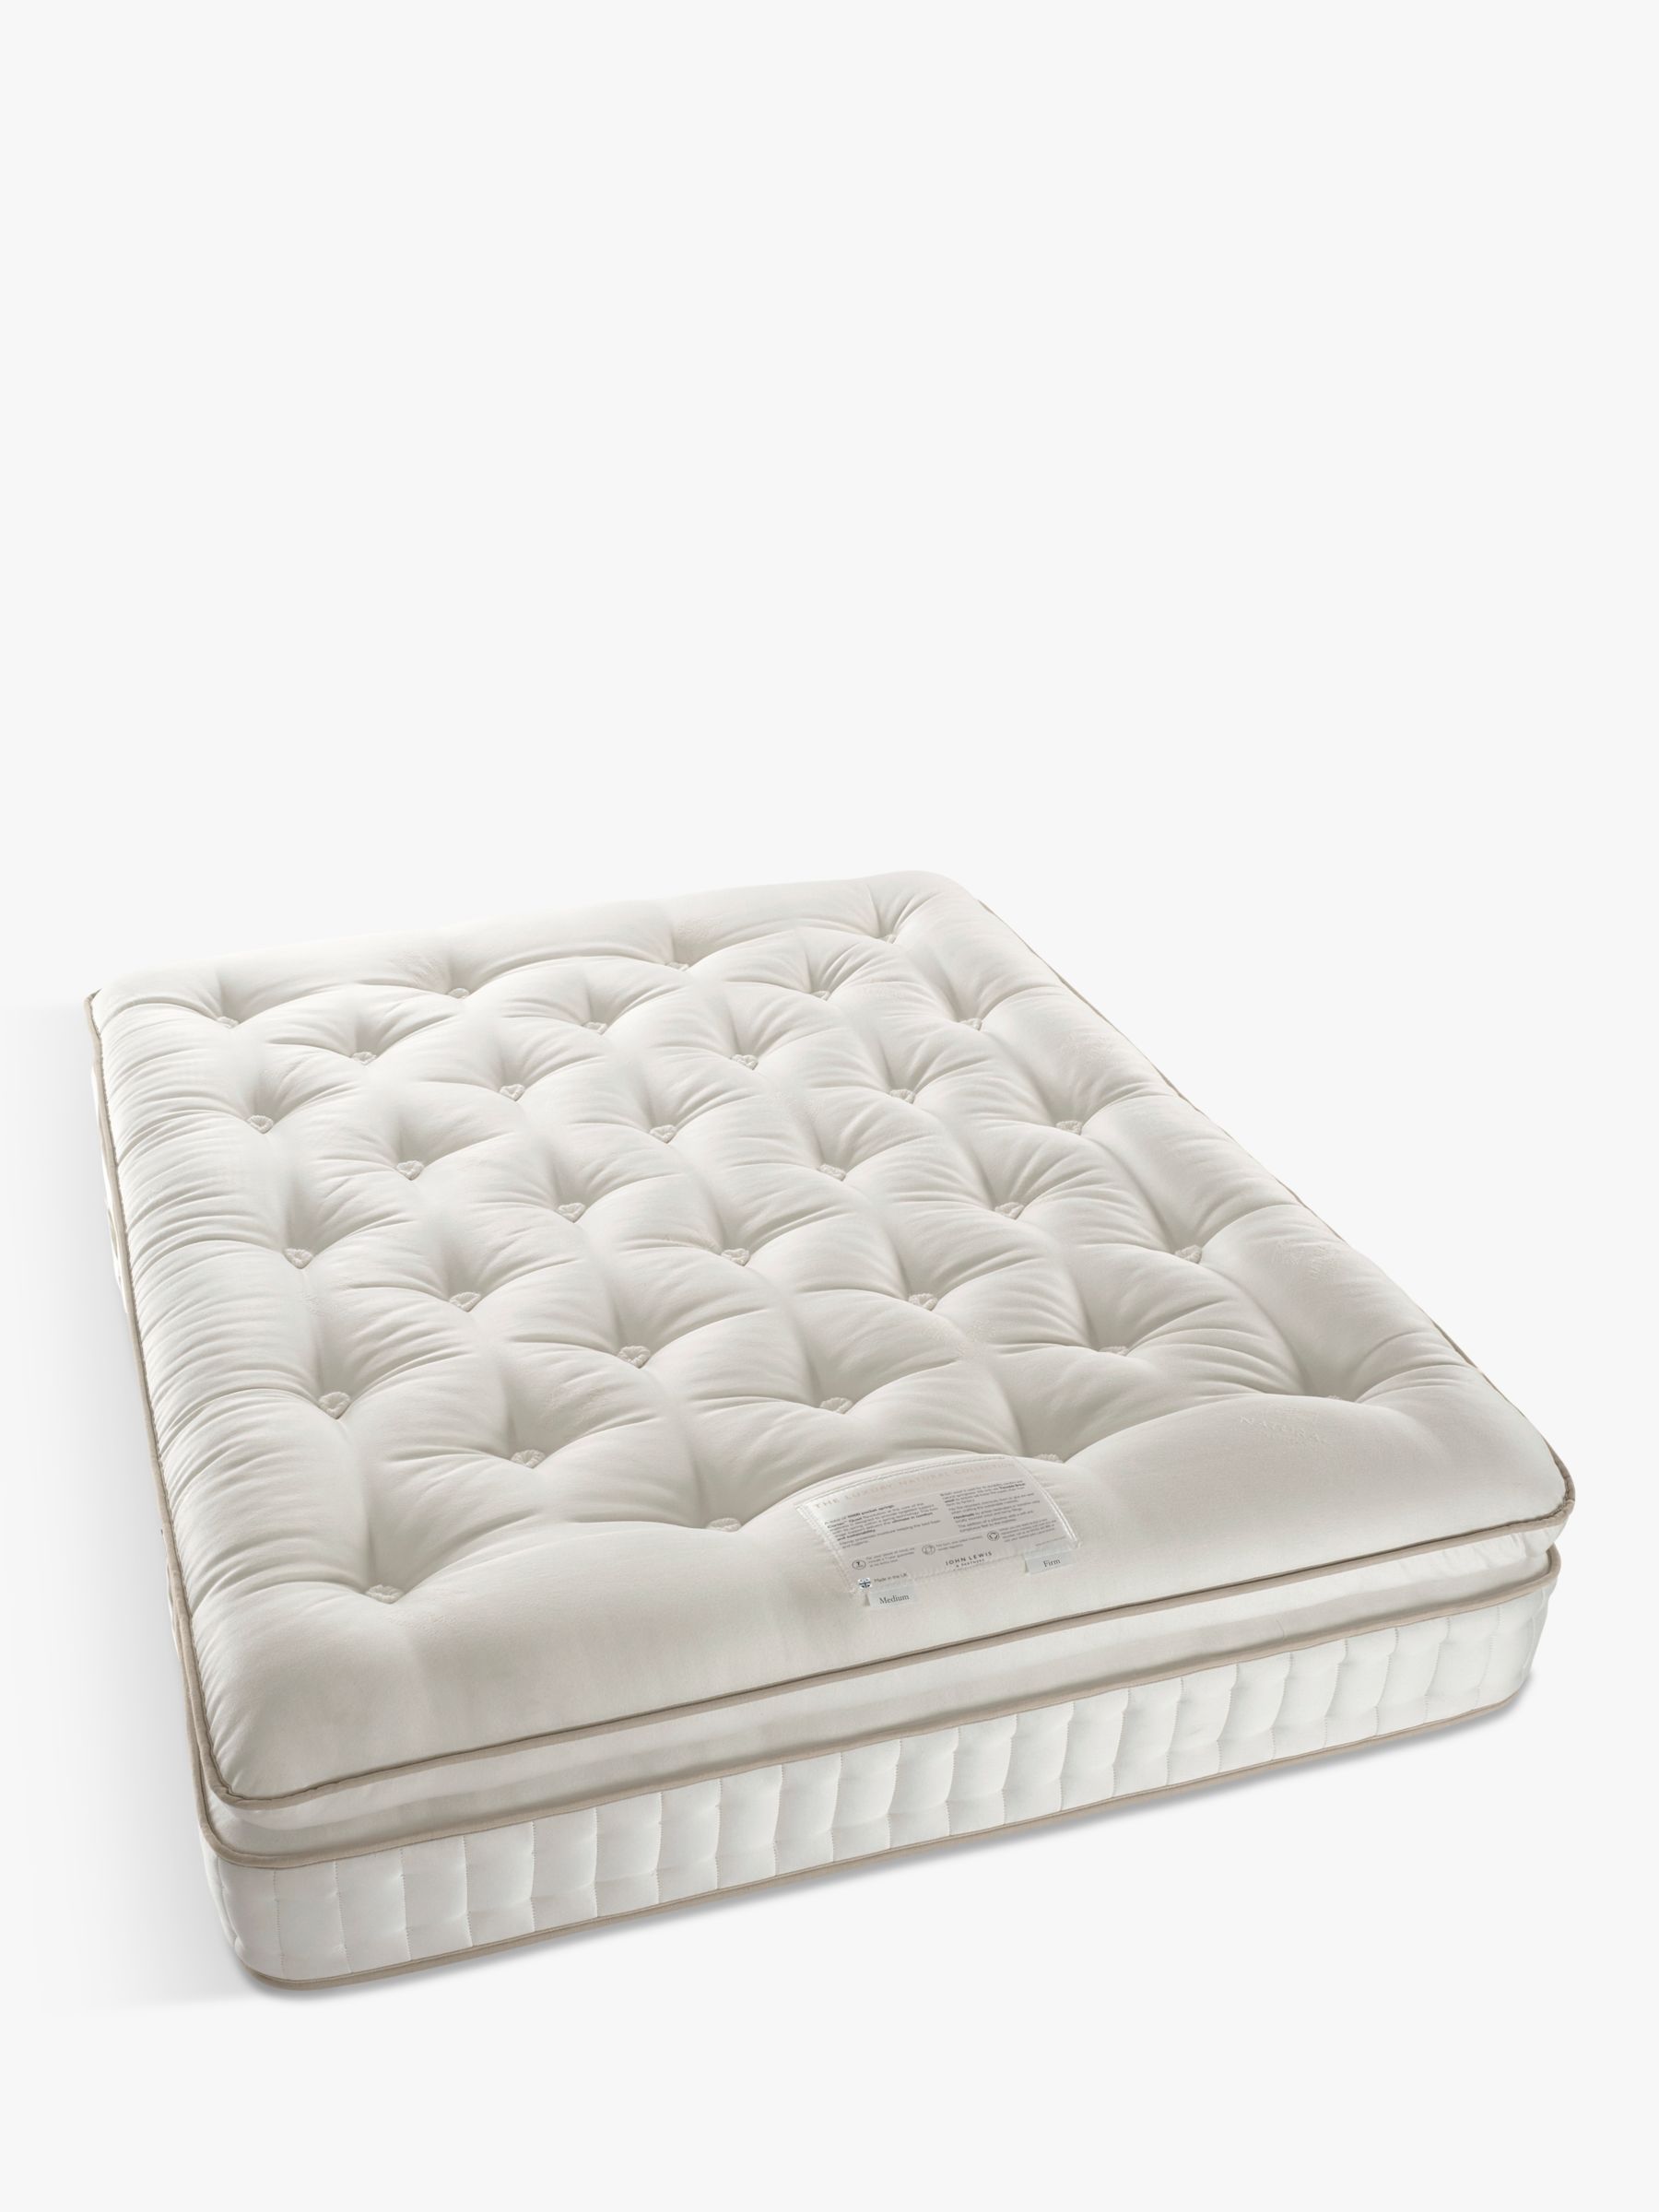 Photo of John lewis luxury natural collection british wool pillowtop 11000 king size regular tension pocket spring mattress